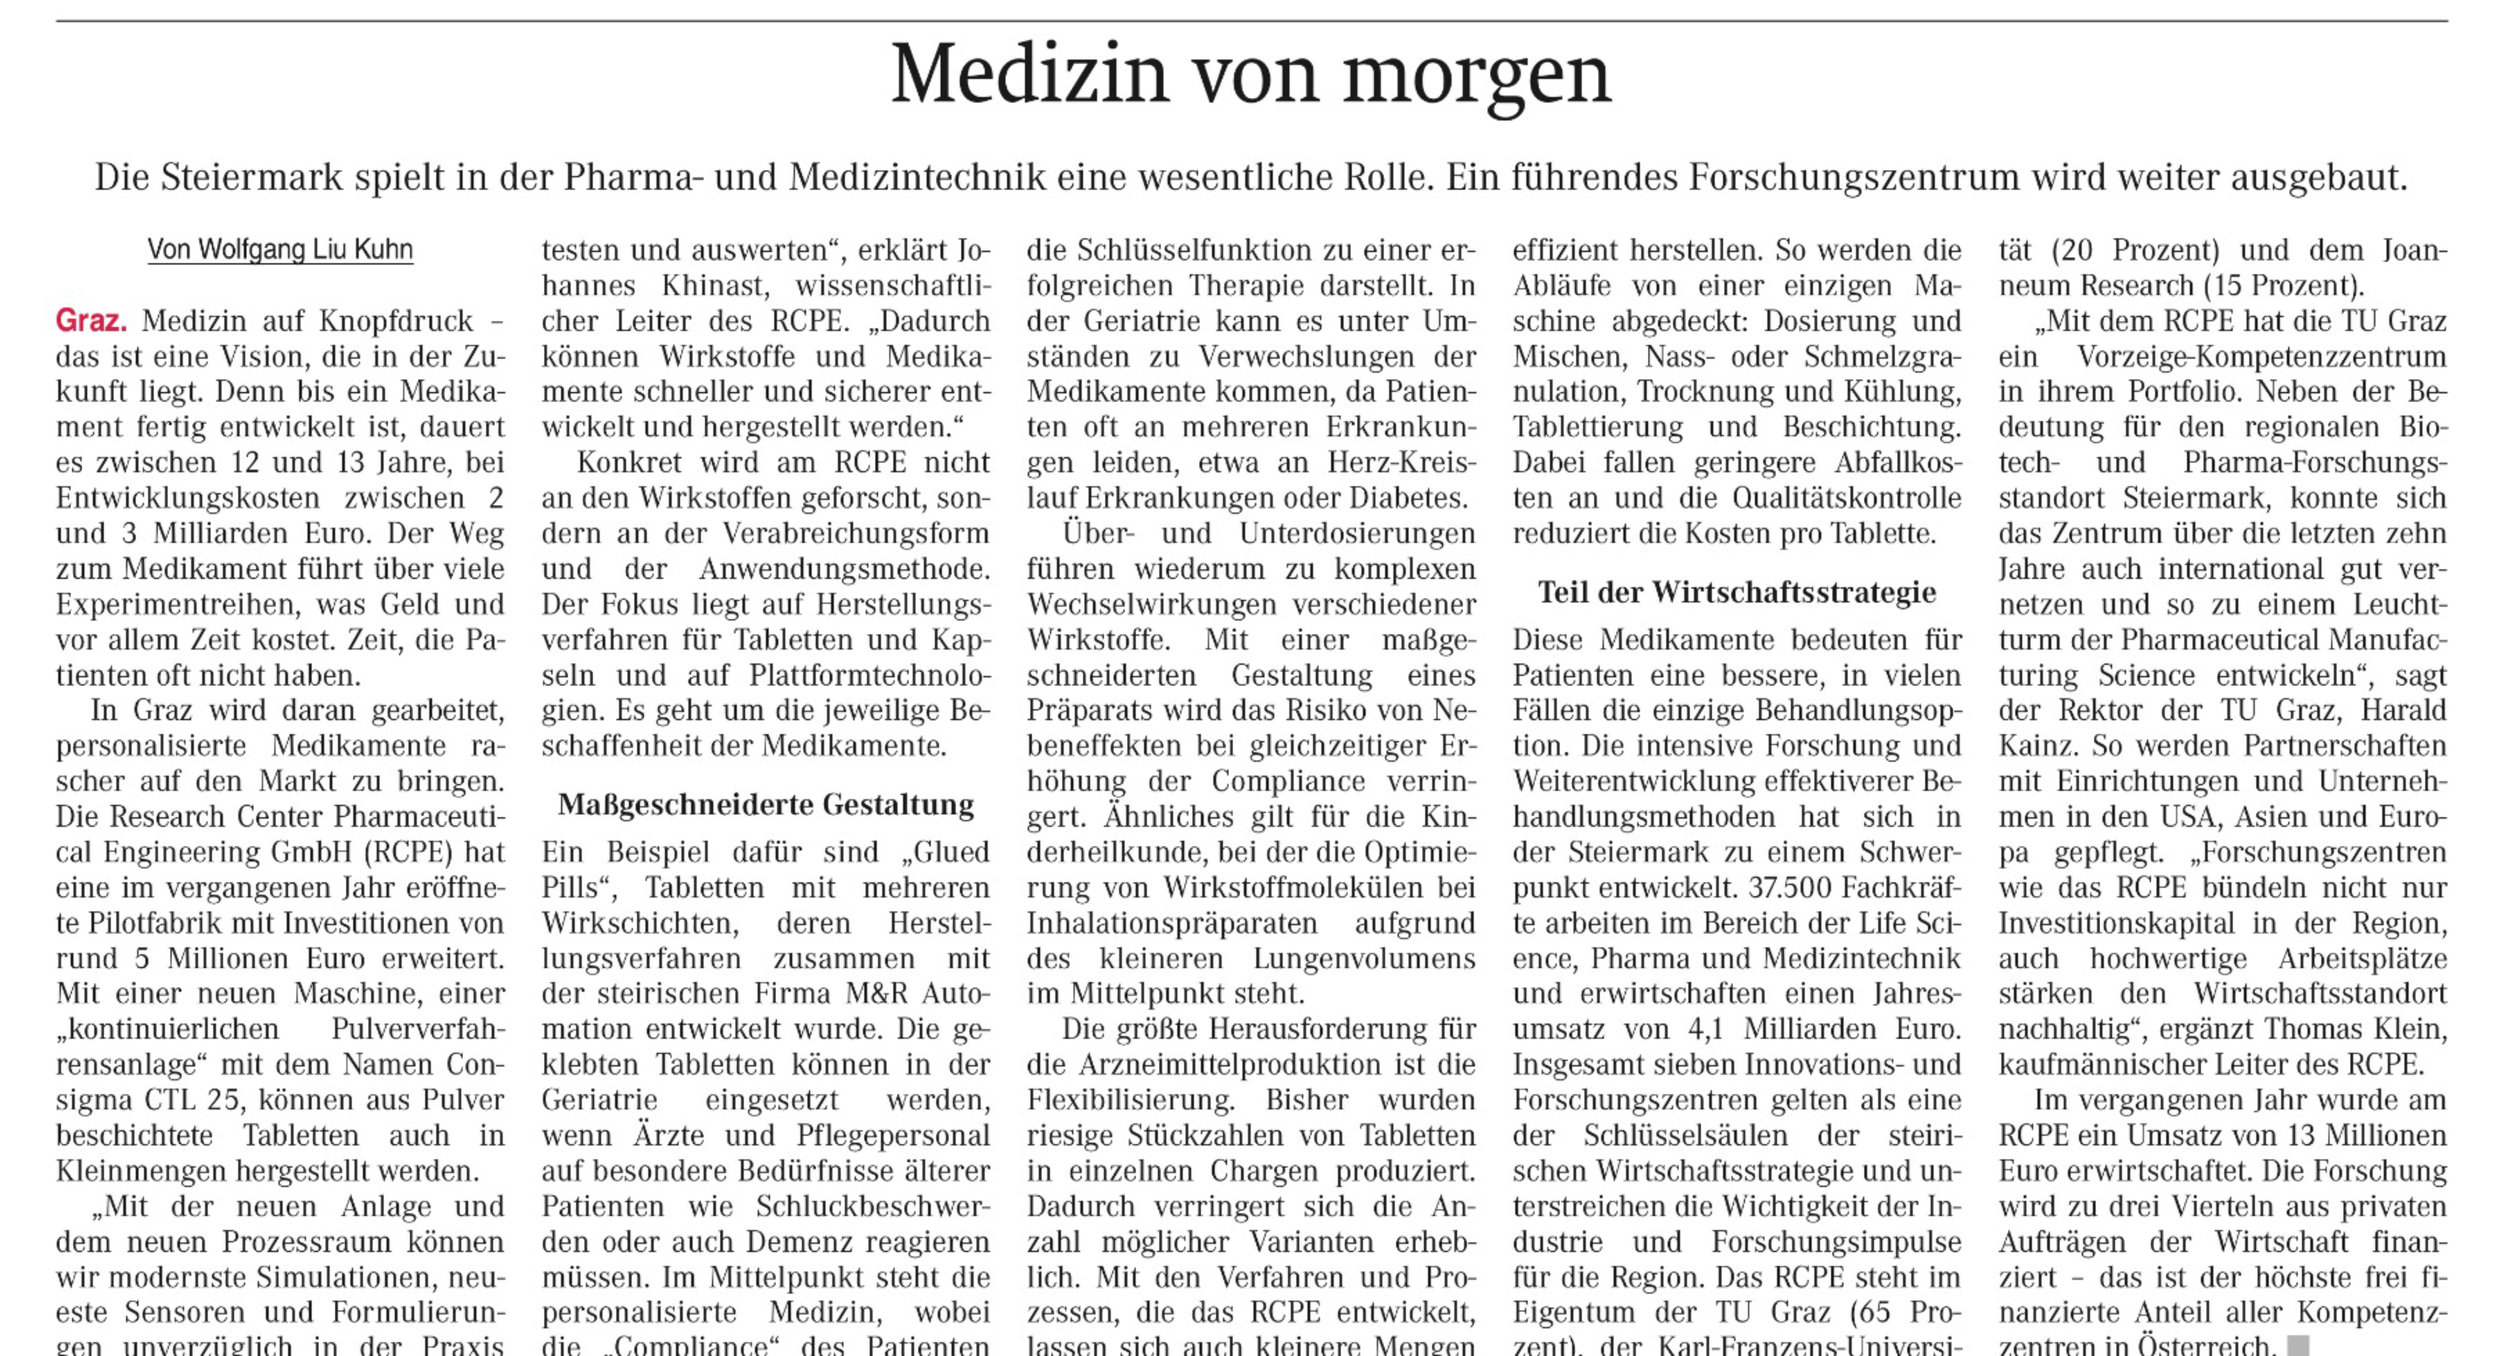 Wiener-Zeitung_20180804-2.jpg